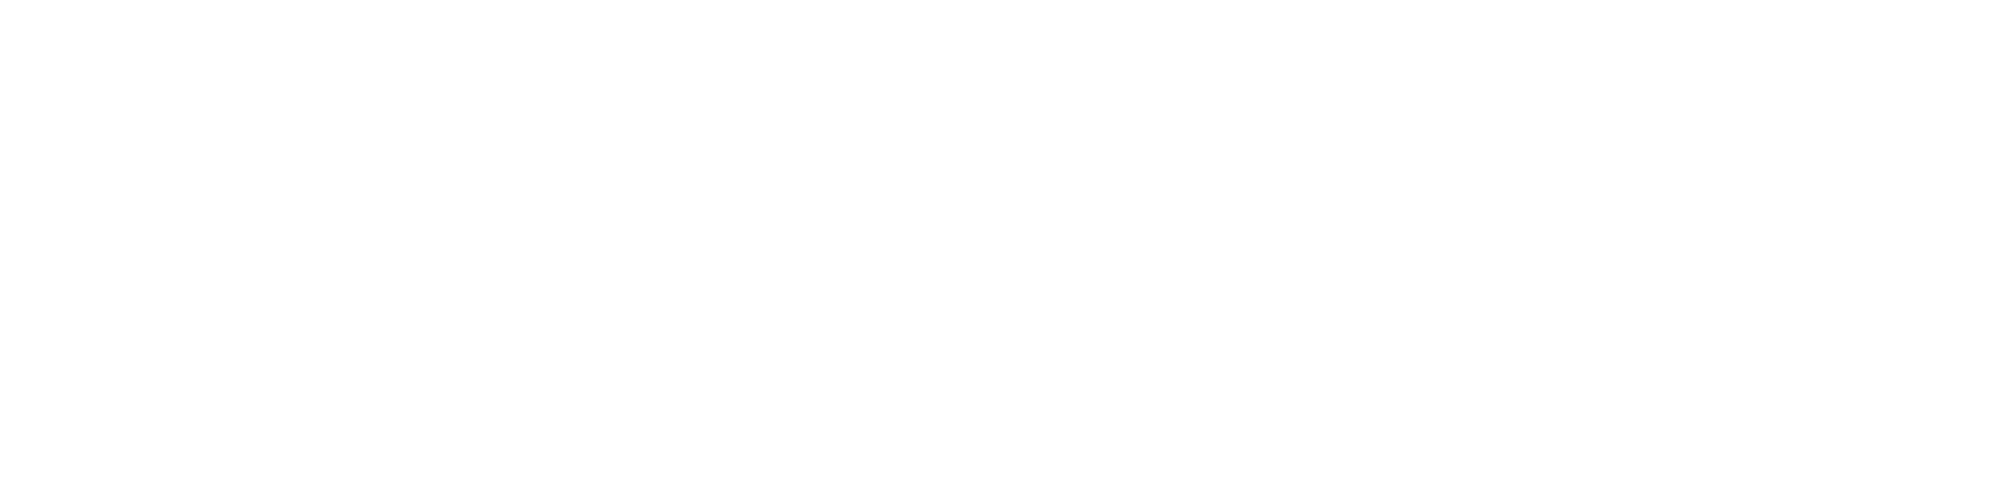 onplan-logo-horizontal-white